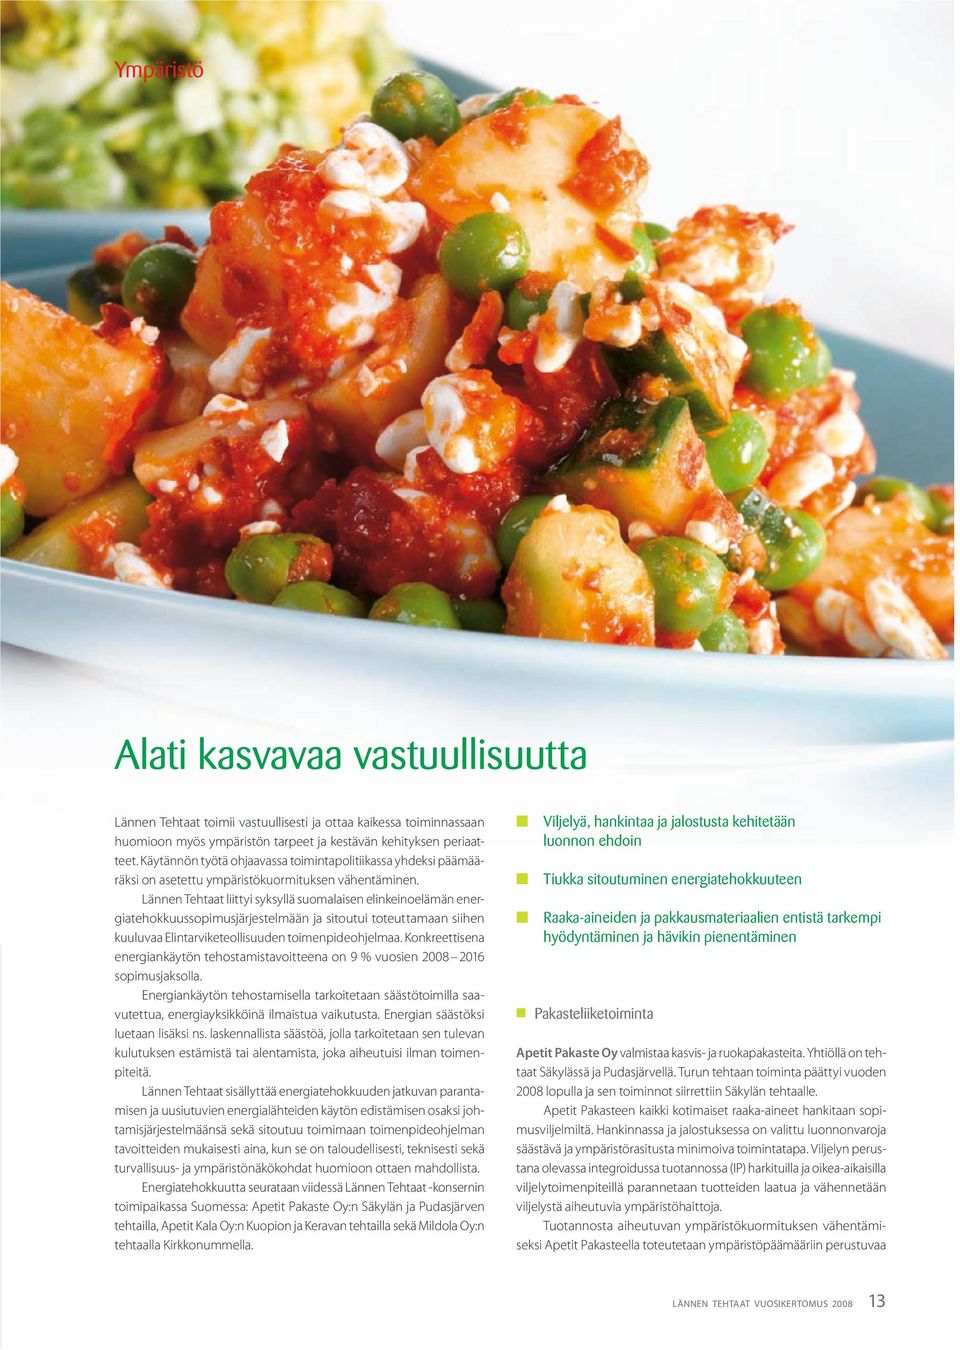 Lännen Tehtaat liittyi syksyllä suomalaisen elinkeinoelämän ener giatehokkuussopimusjärjestelmään ja sitoutui toteuttamaan siihen kuuluvaa Elintarviketeollisuuden toimenpideohjelmaa.